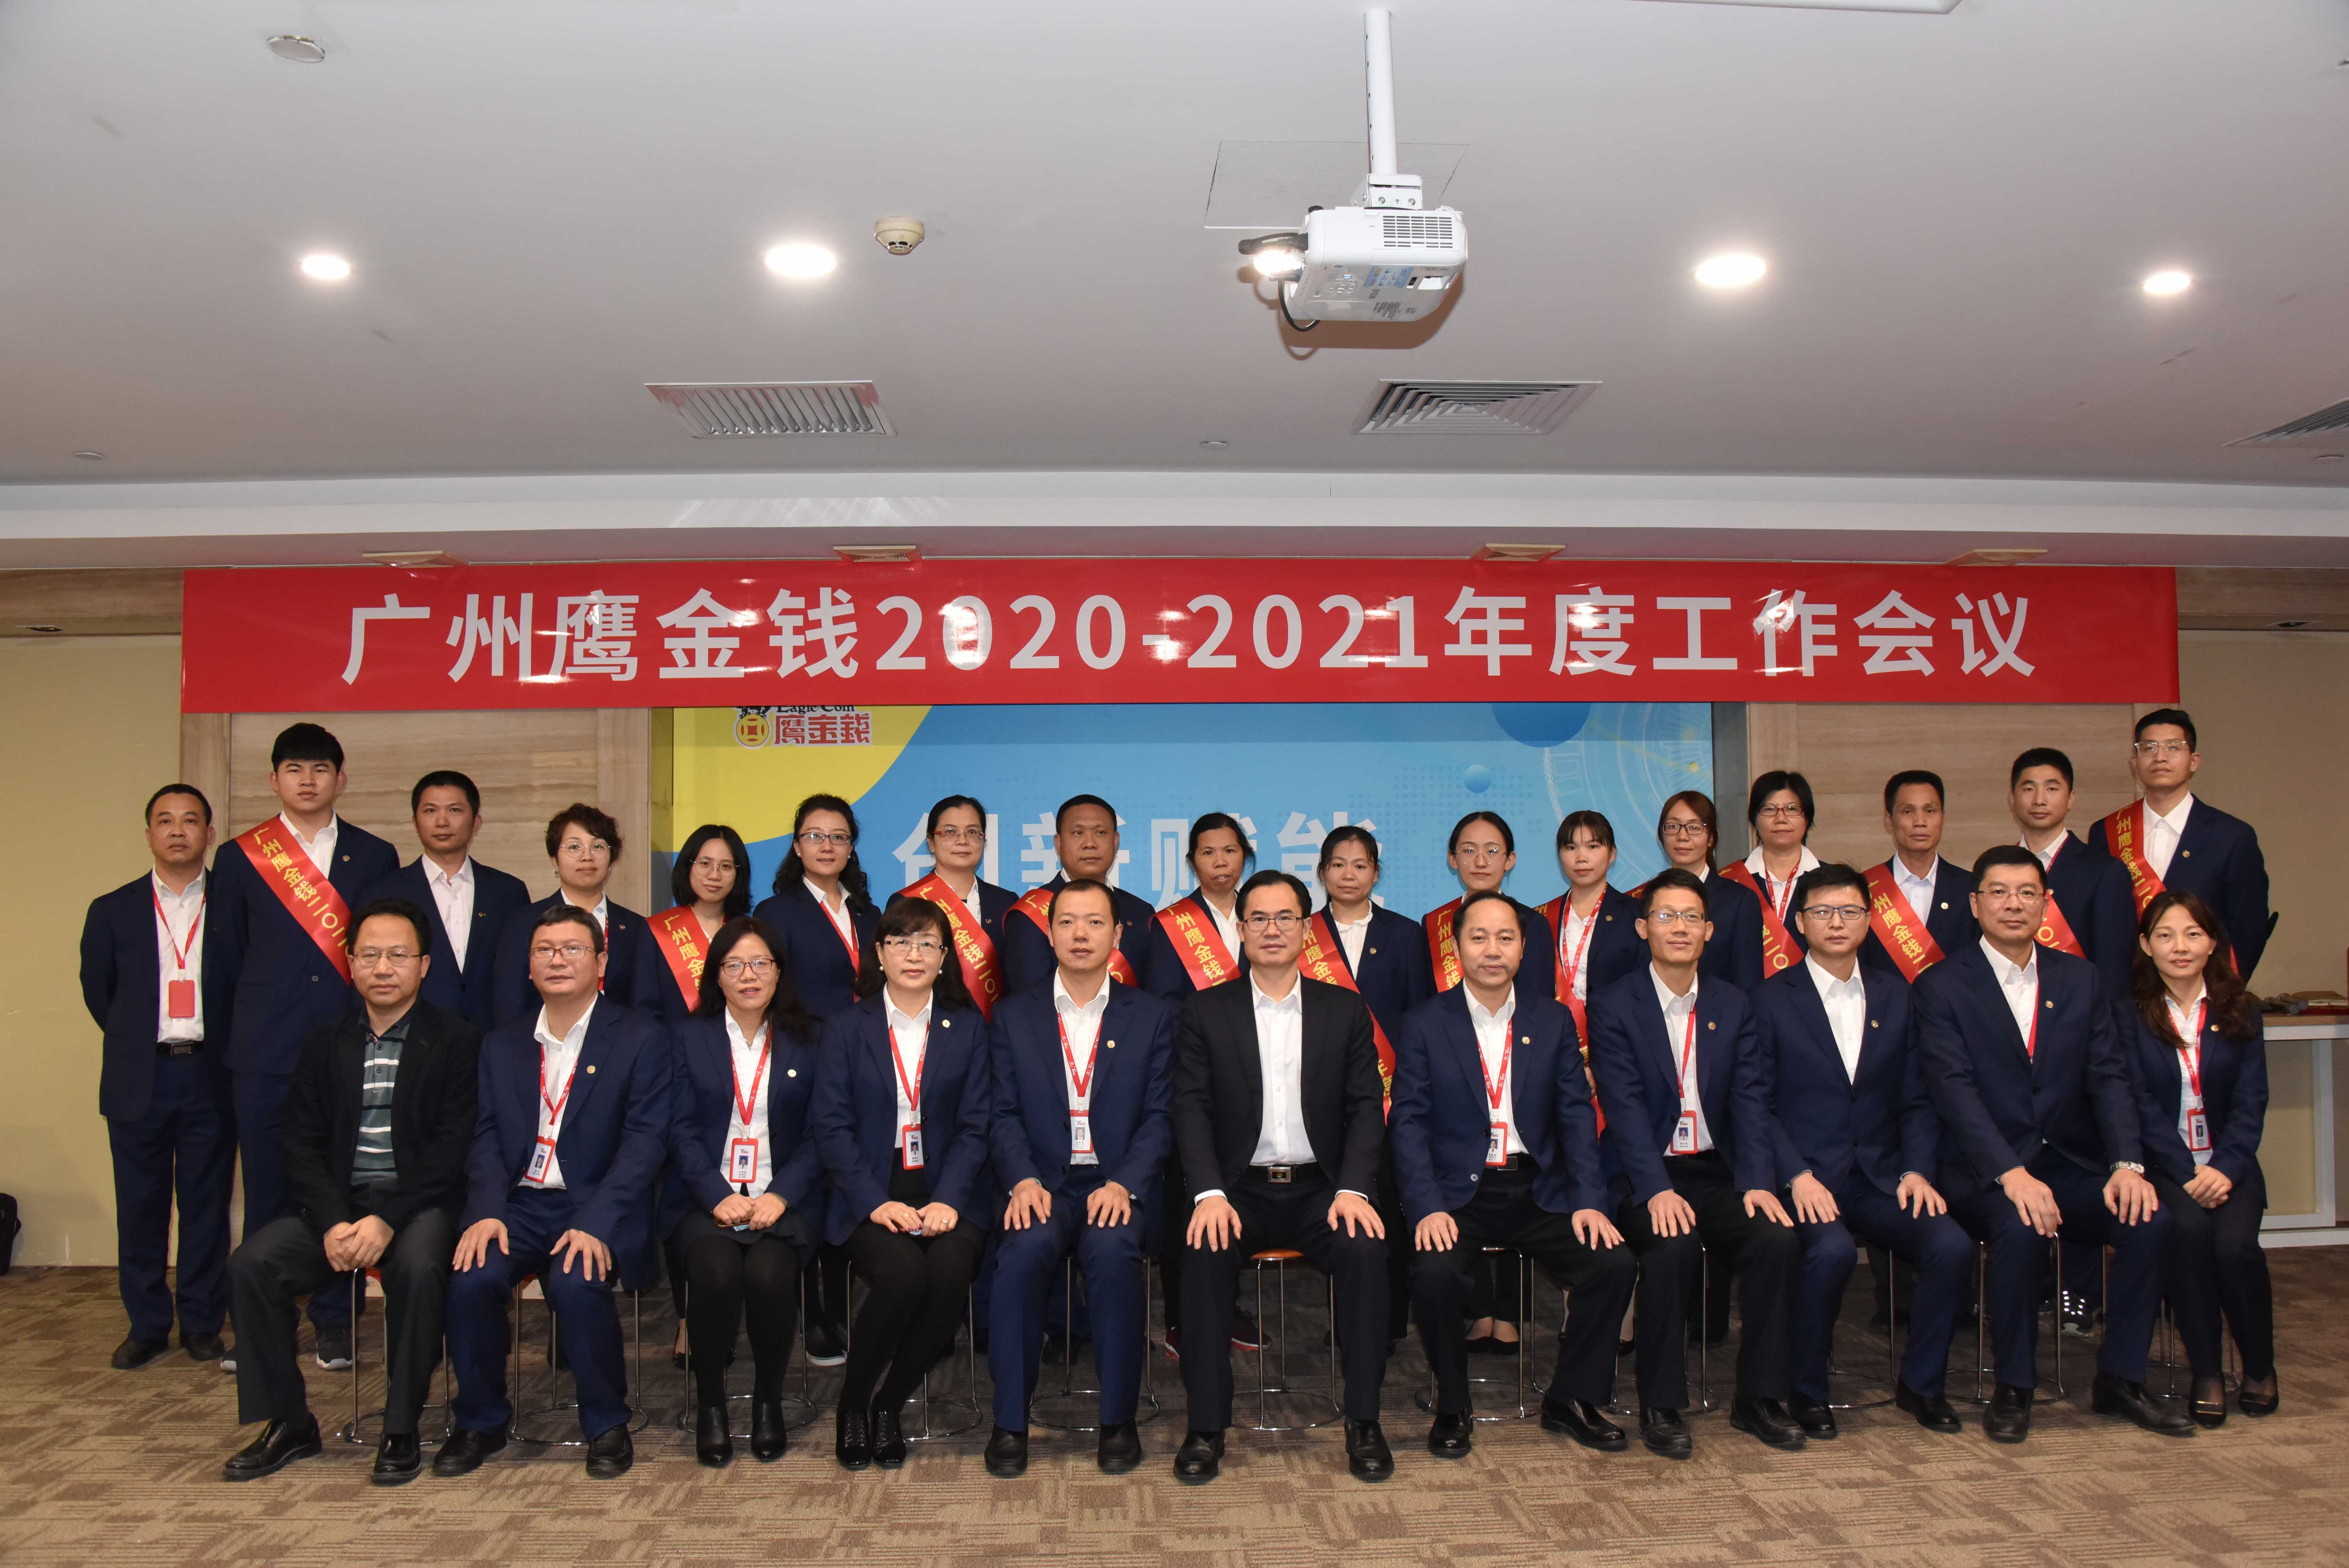 创新赋能、提速发展 ——广州鹰金钱召开2020-2021年度工作会议